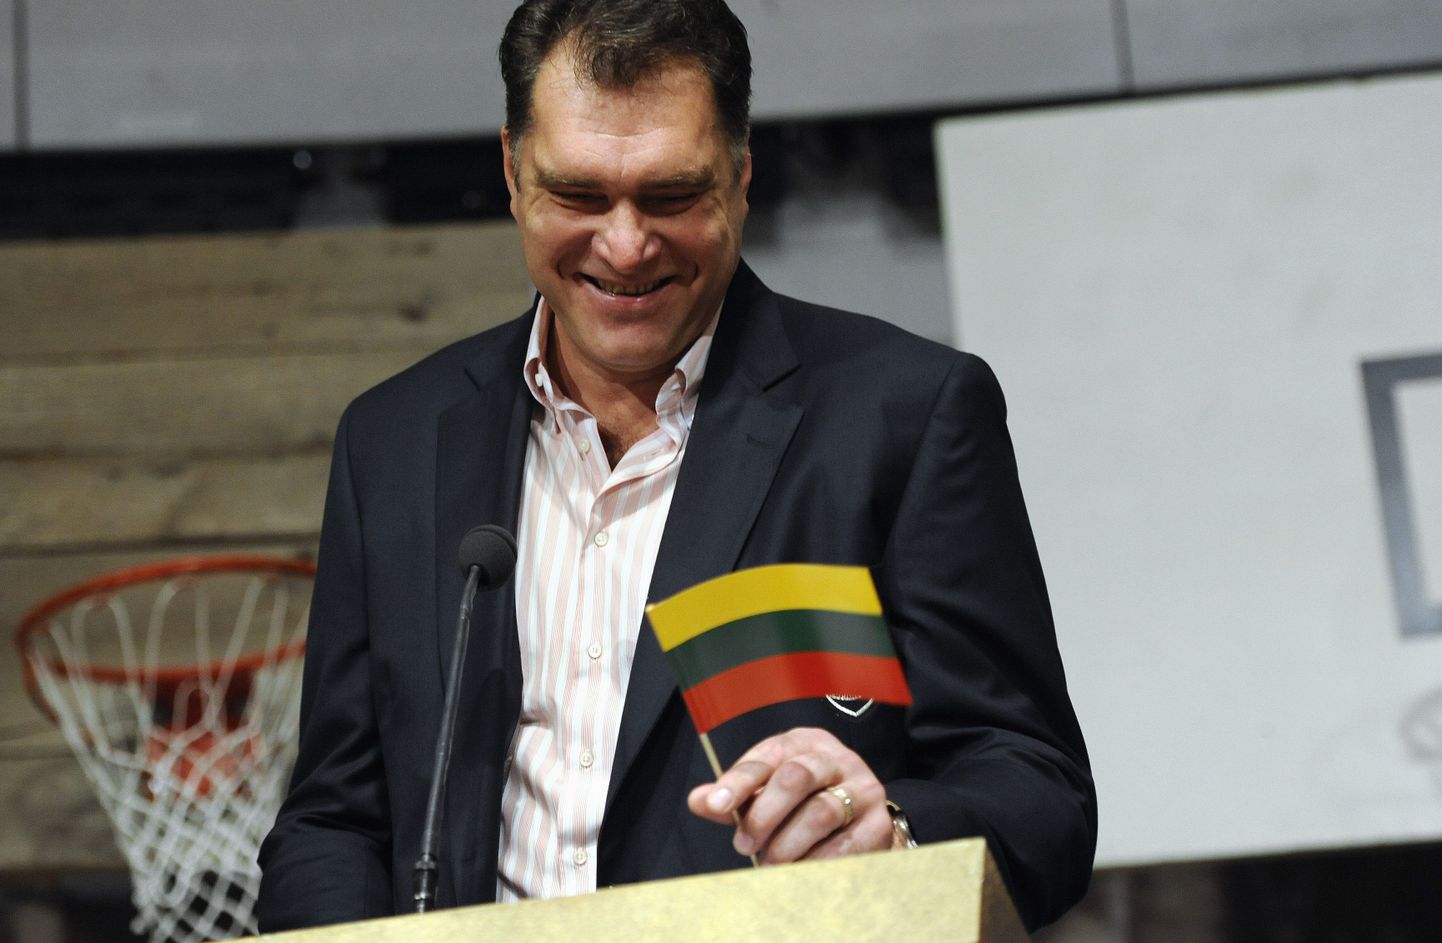 Leedu korvpalliliidu president Arvydas Sabonis.